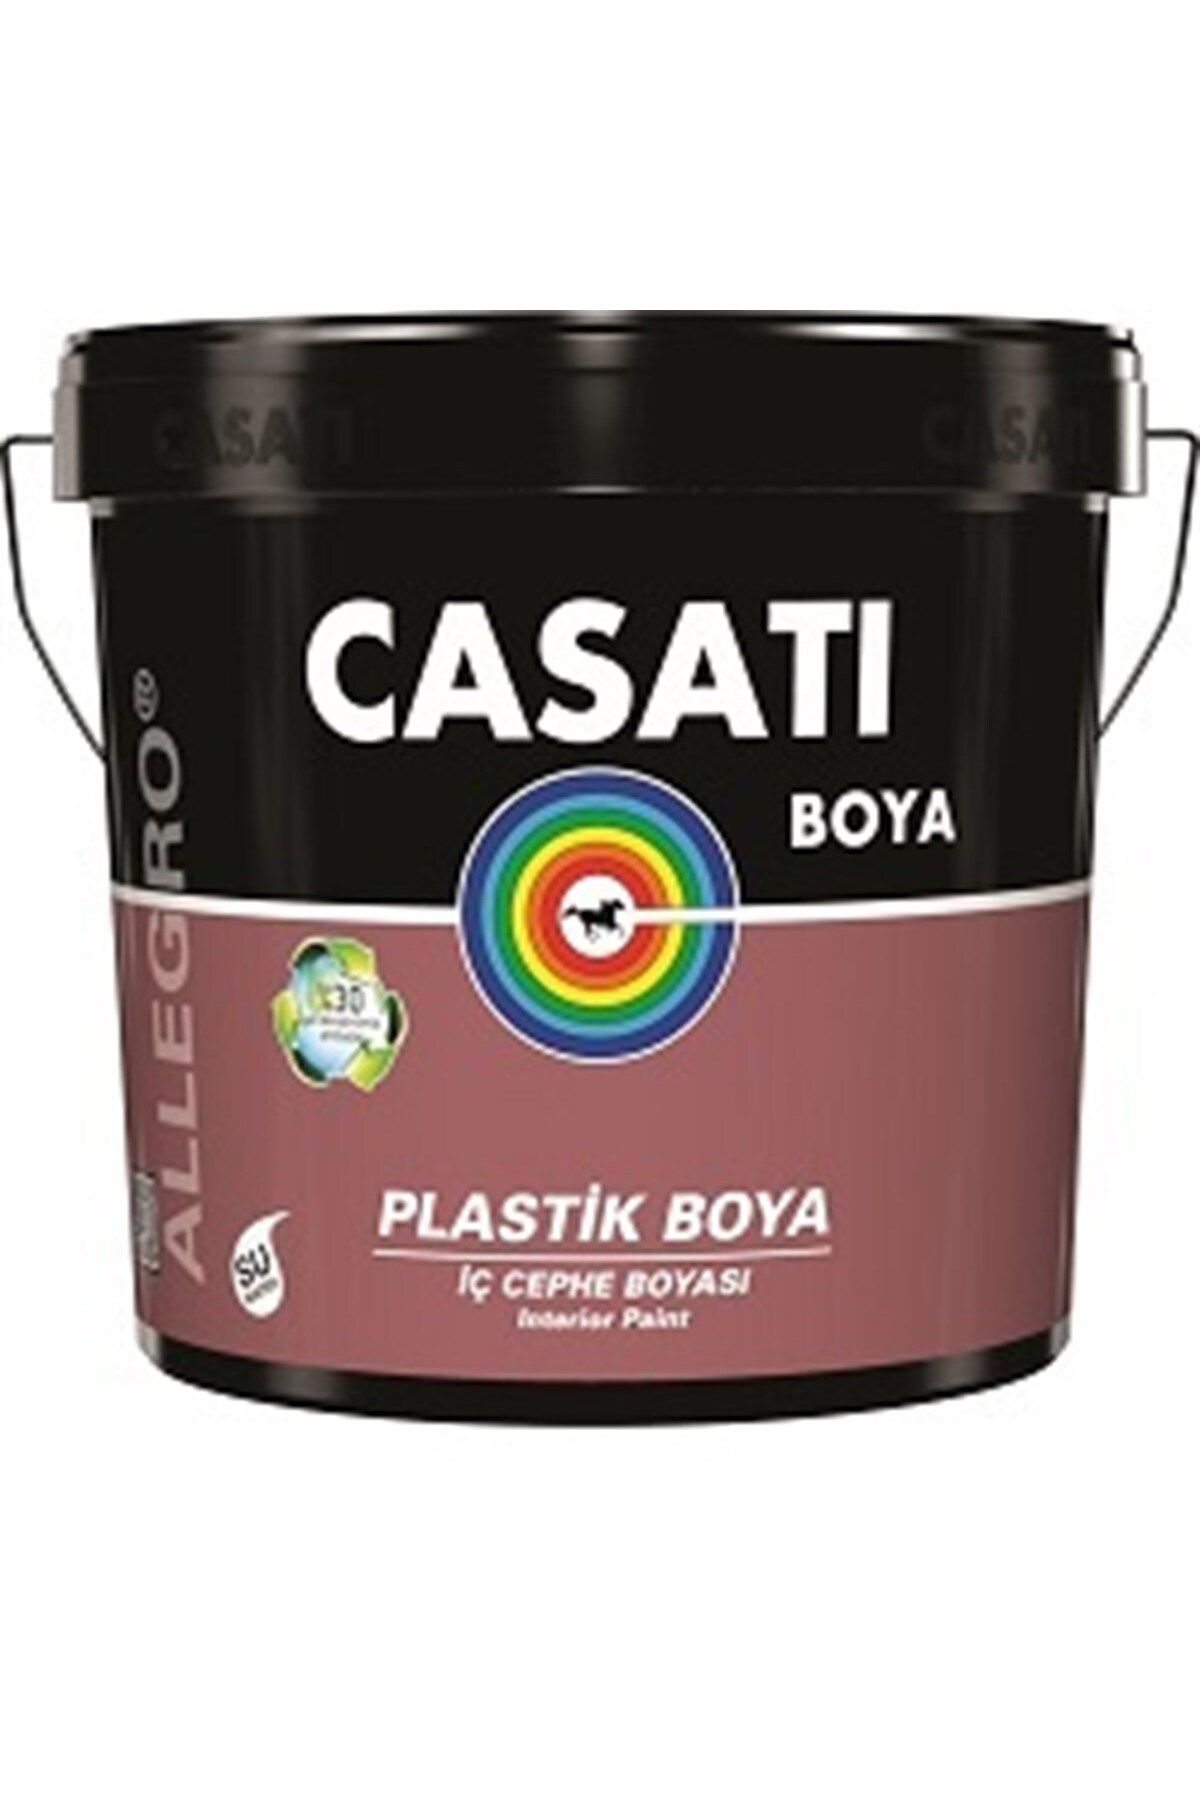 Casati Allegro Plastik Iç Cephe Boyası C822 Özel Kum Beji 3,5 Kg